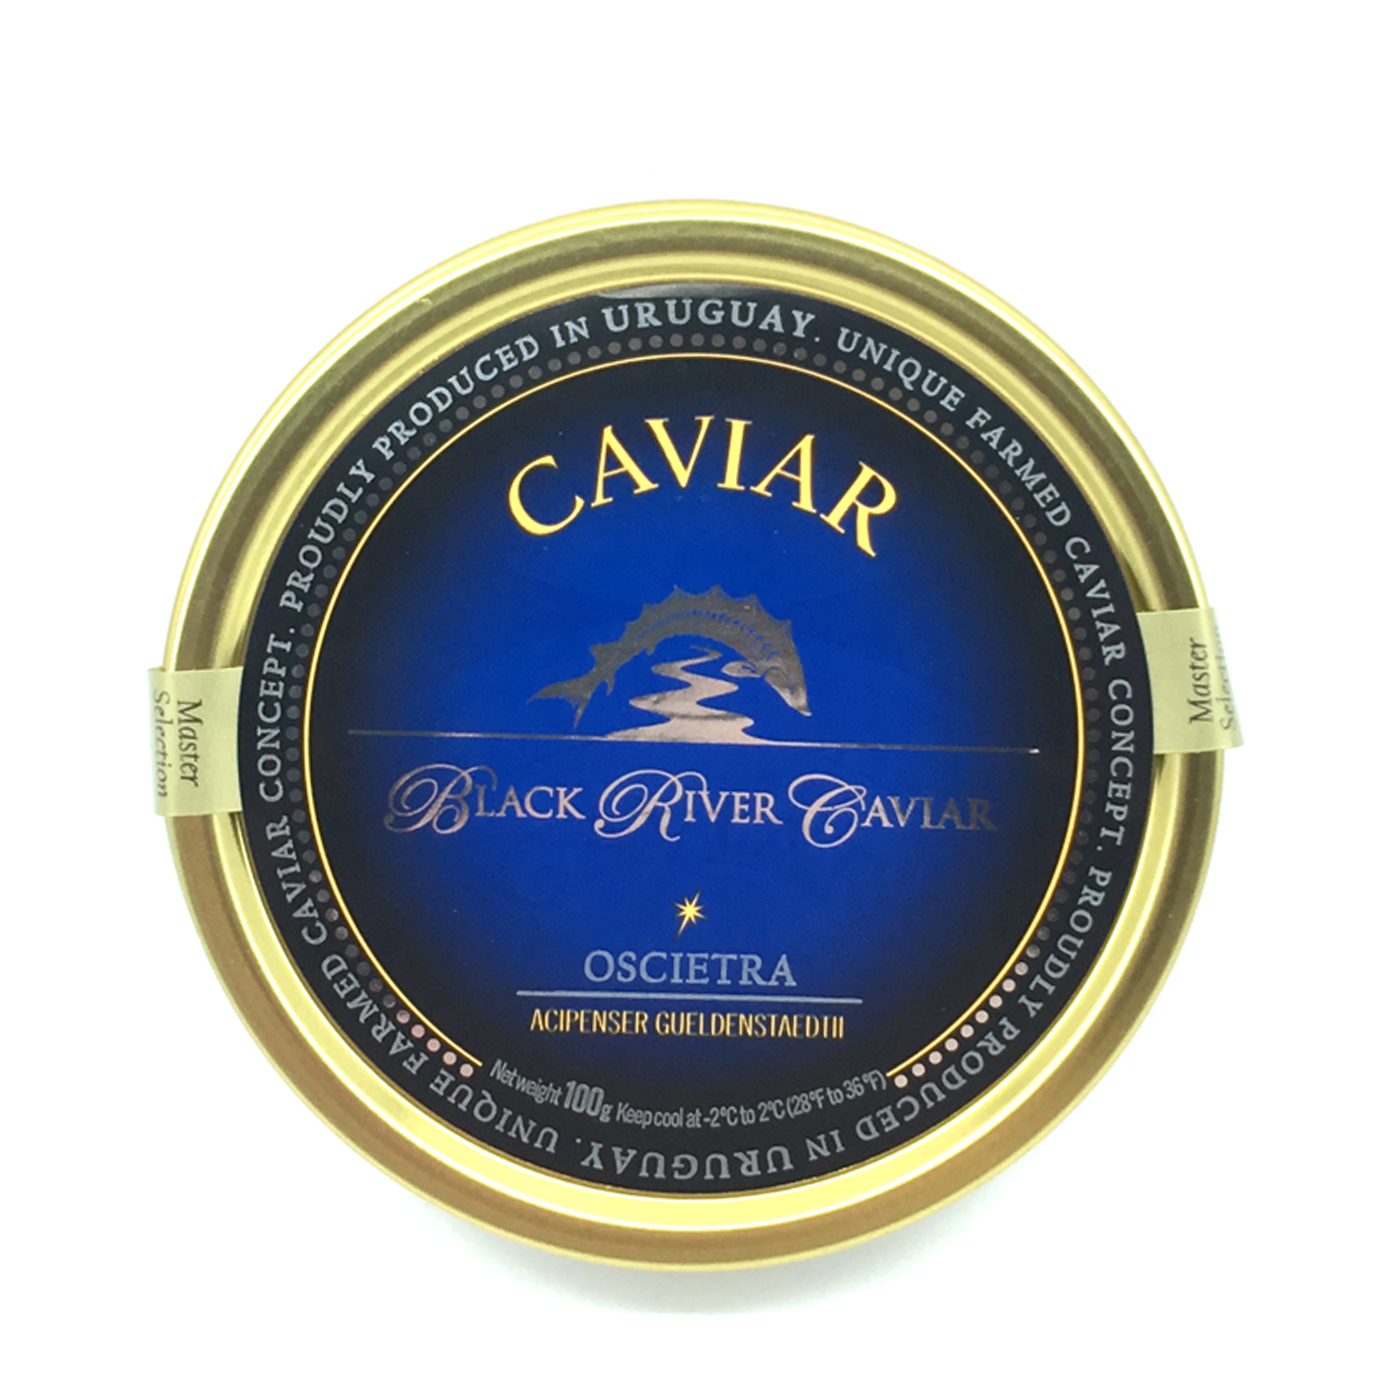 Master Selection Oscietra Caviar - Black River Caviar